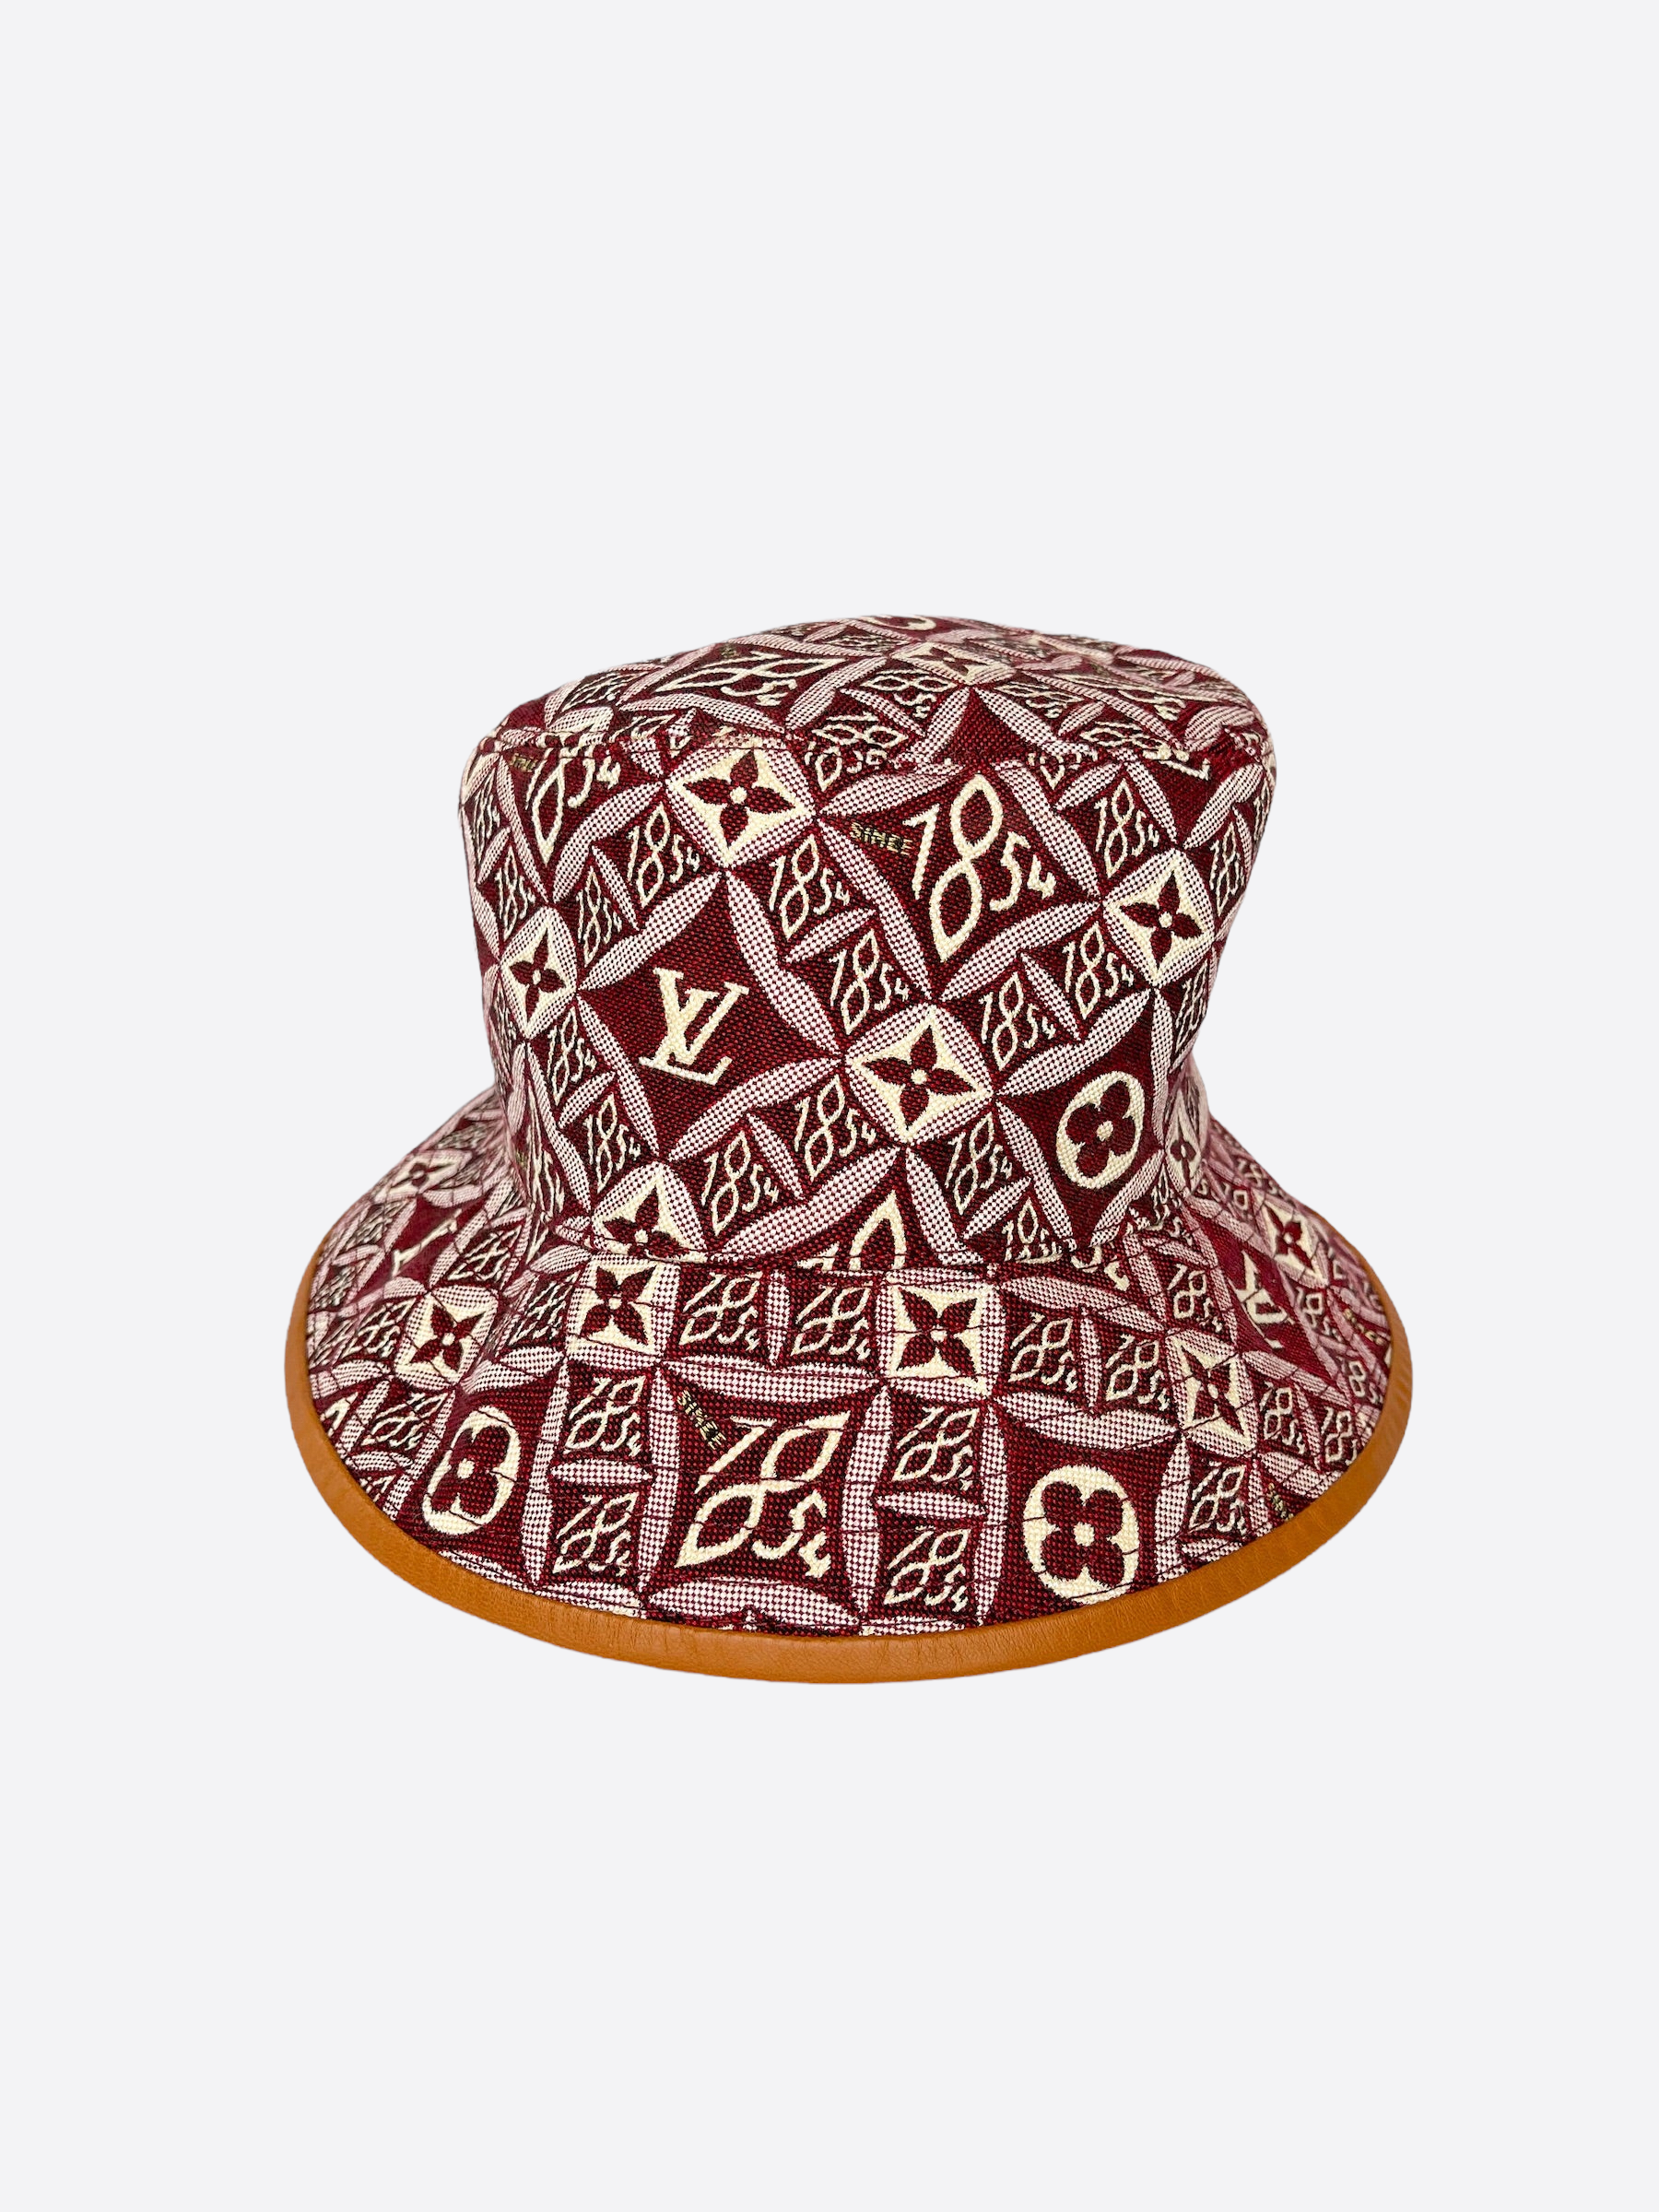 Louis Vuitton - Bandana Monogram Reversible Bucket Hat – eluXive